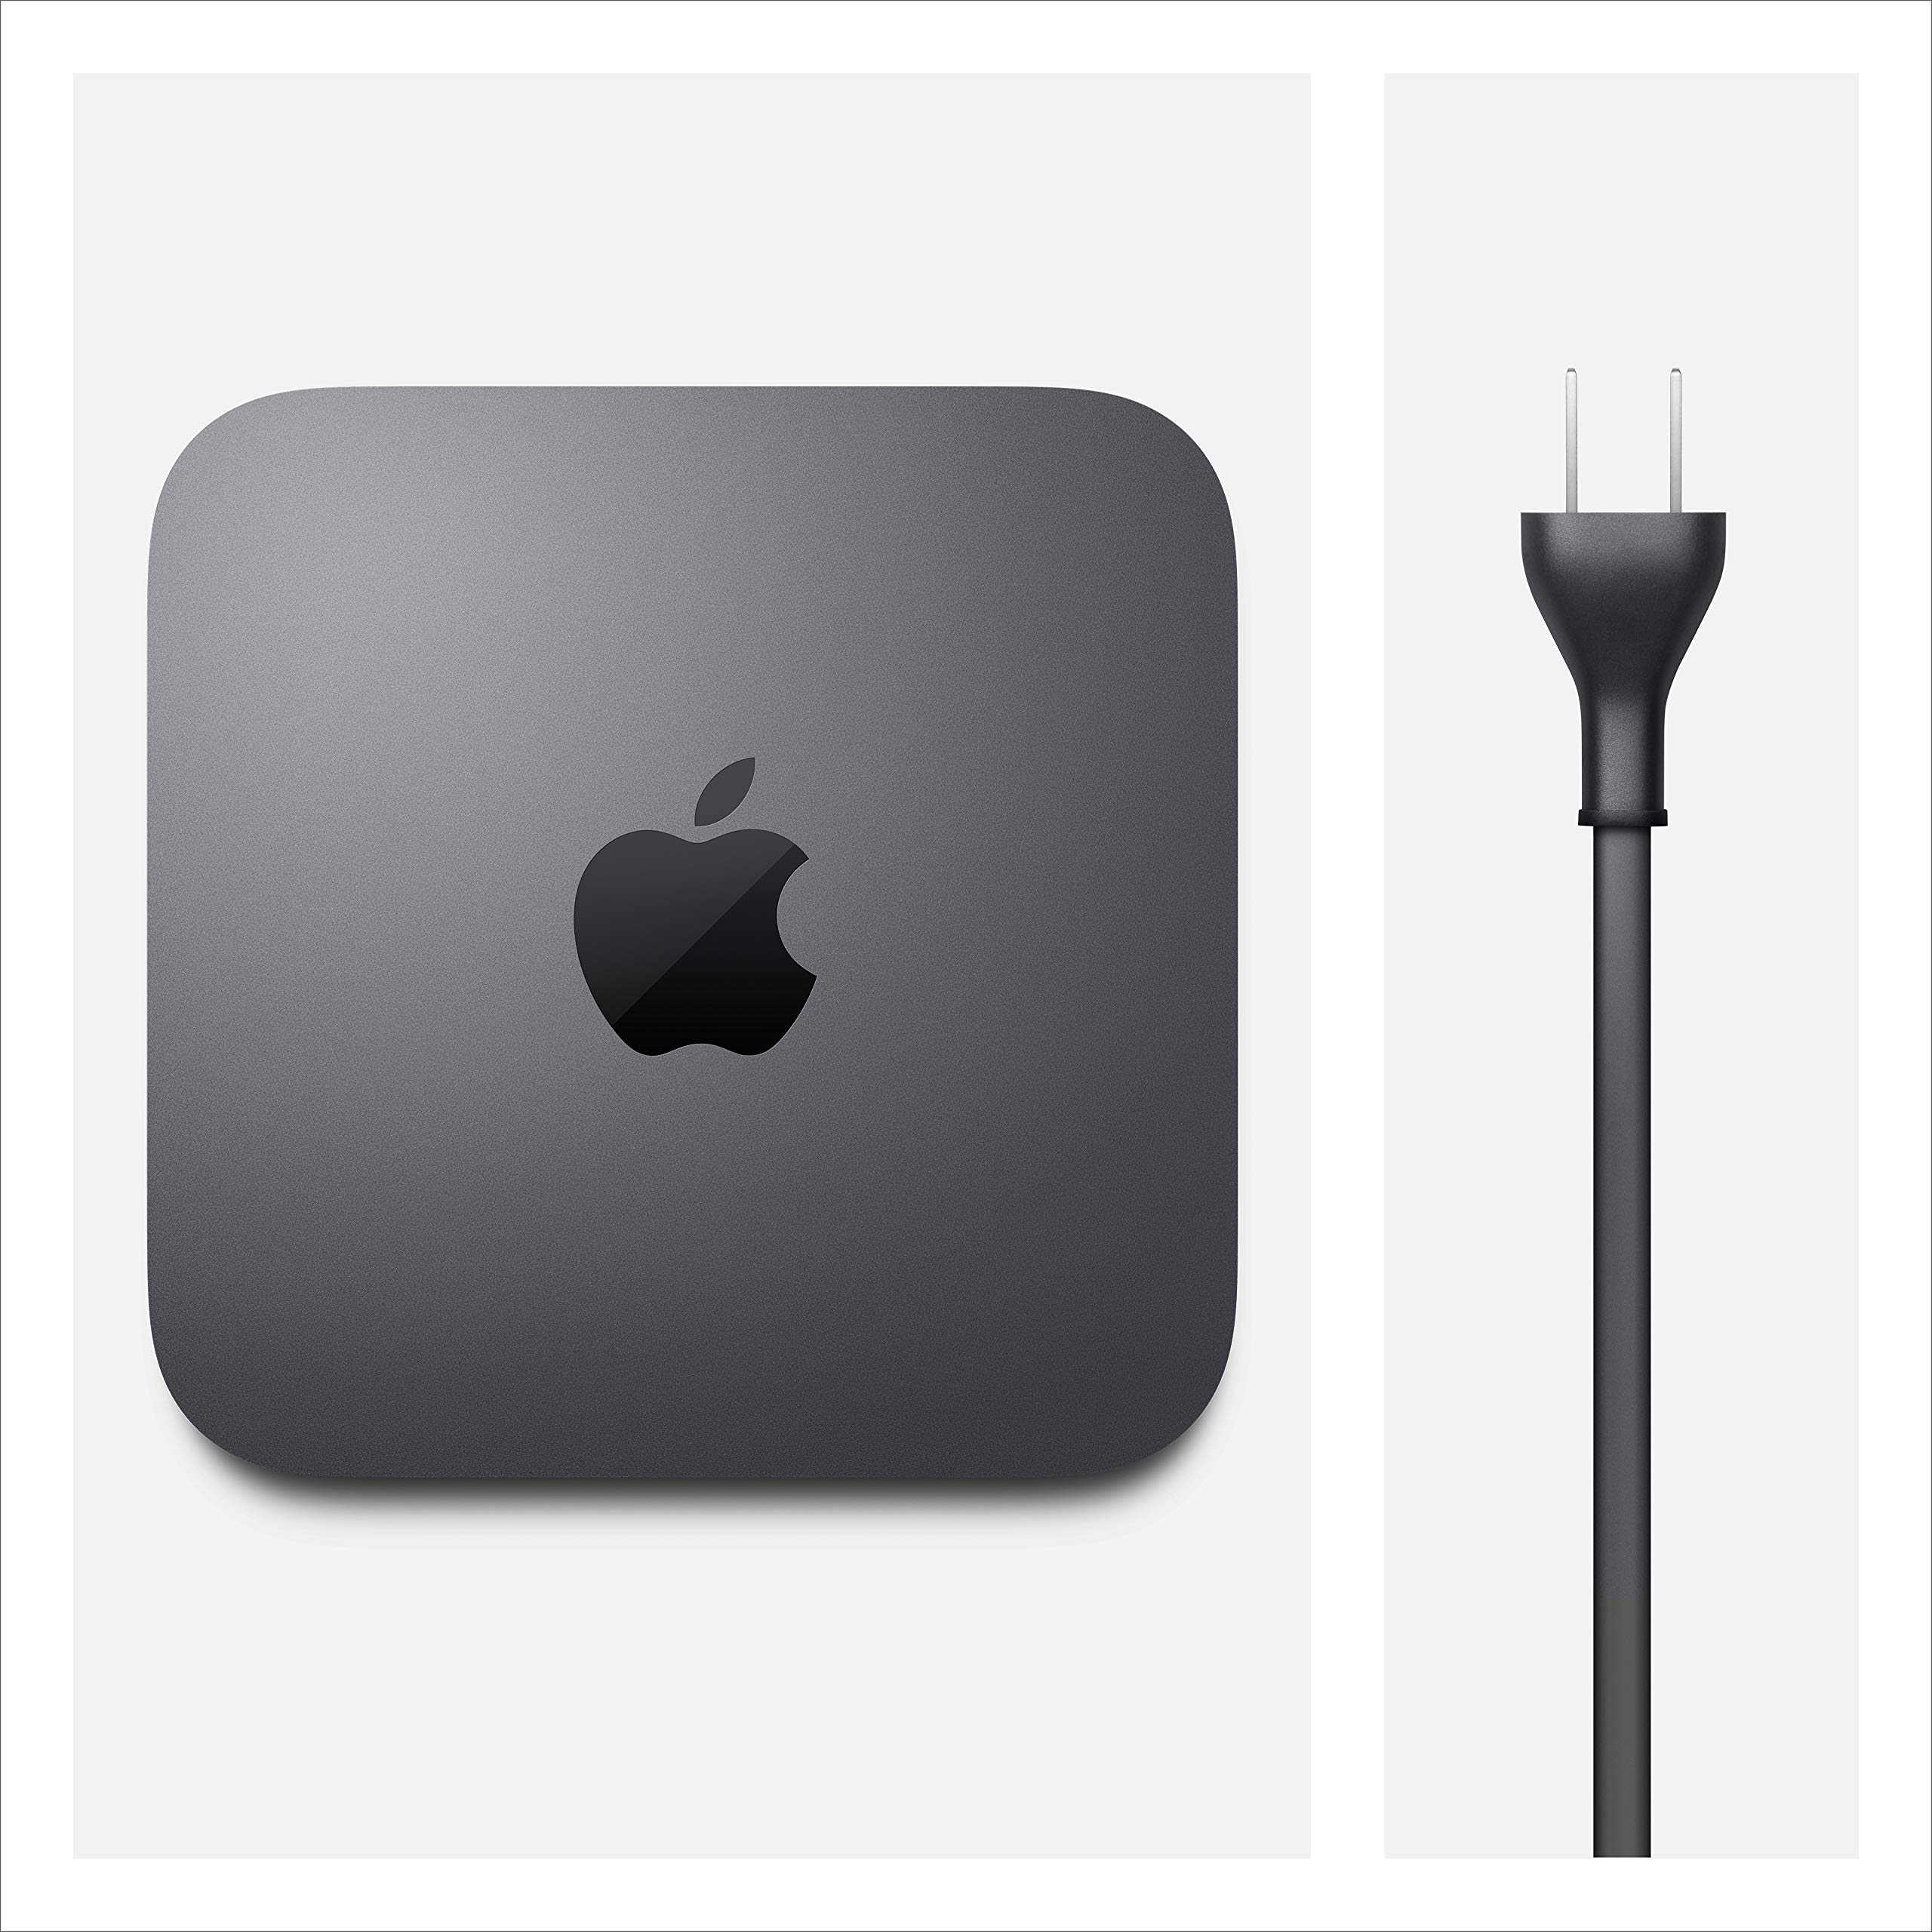 Apple Mac Mini (3.0GHz 6-core Intel Core i5 Processor, 256GB) - Space Gray (Previous Model)